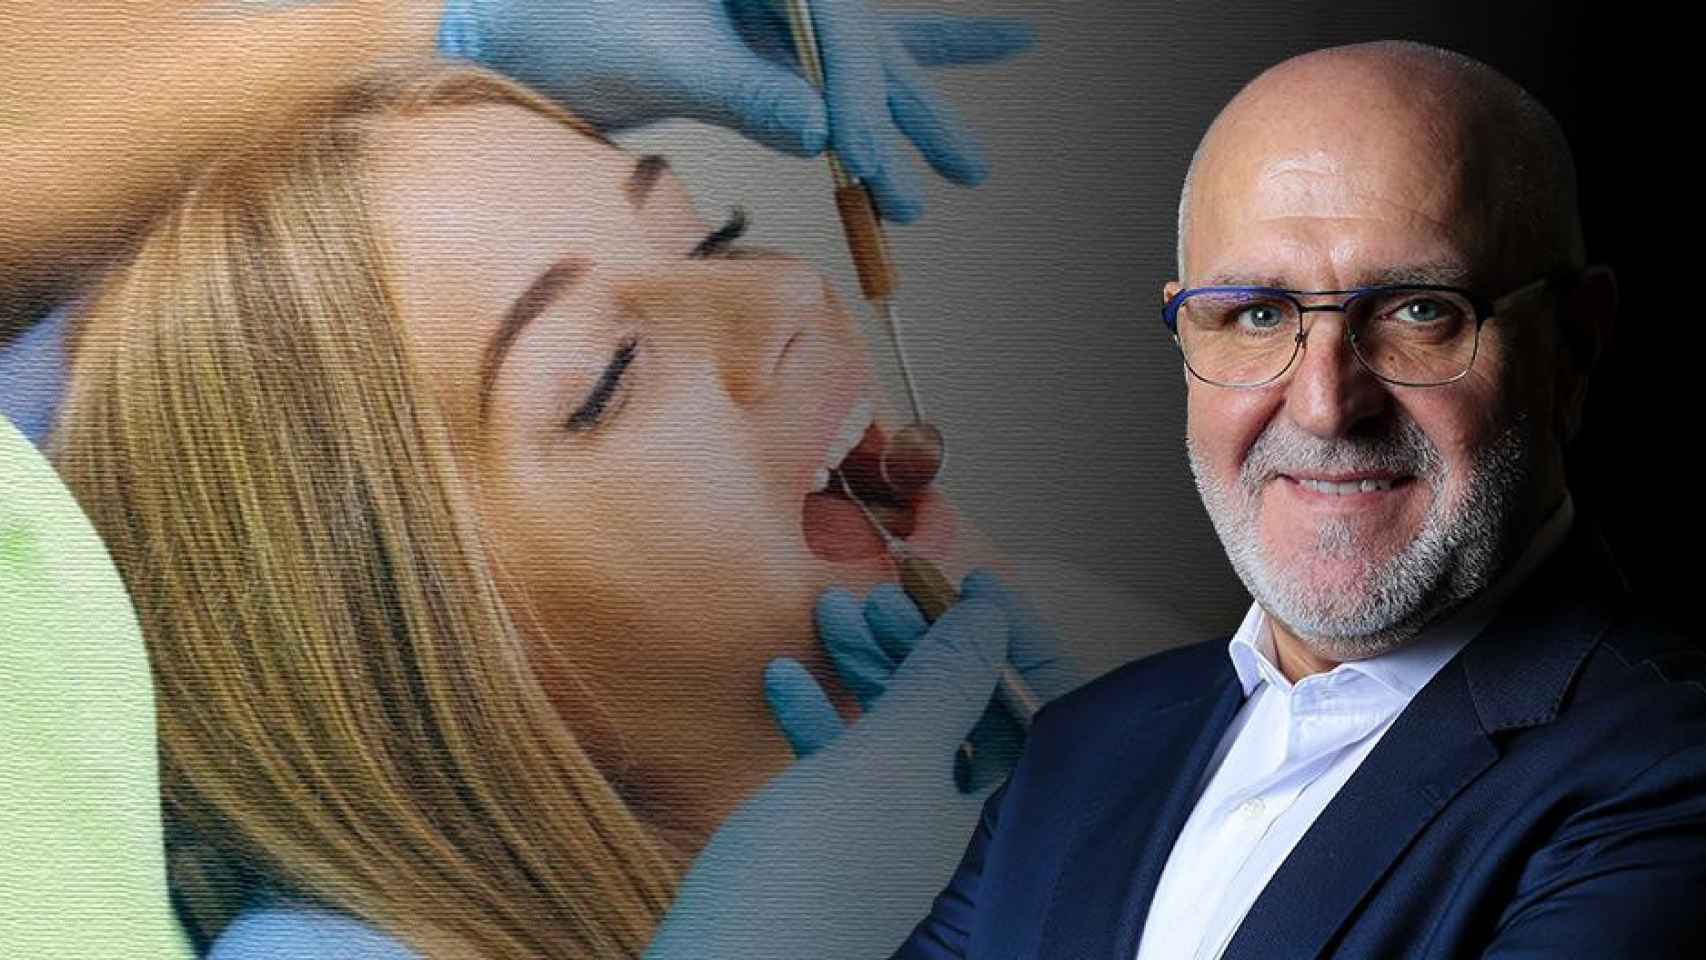 Marcial Hernández y una chica en su visita al dentista / FOTOMONTAJE DE CG